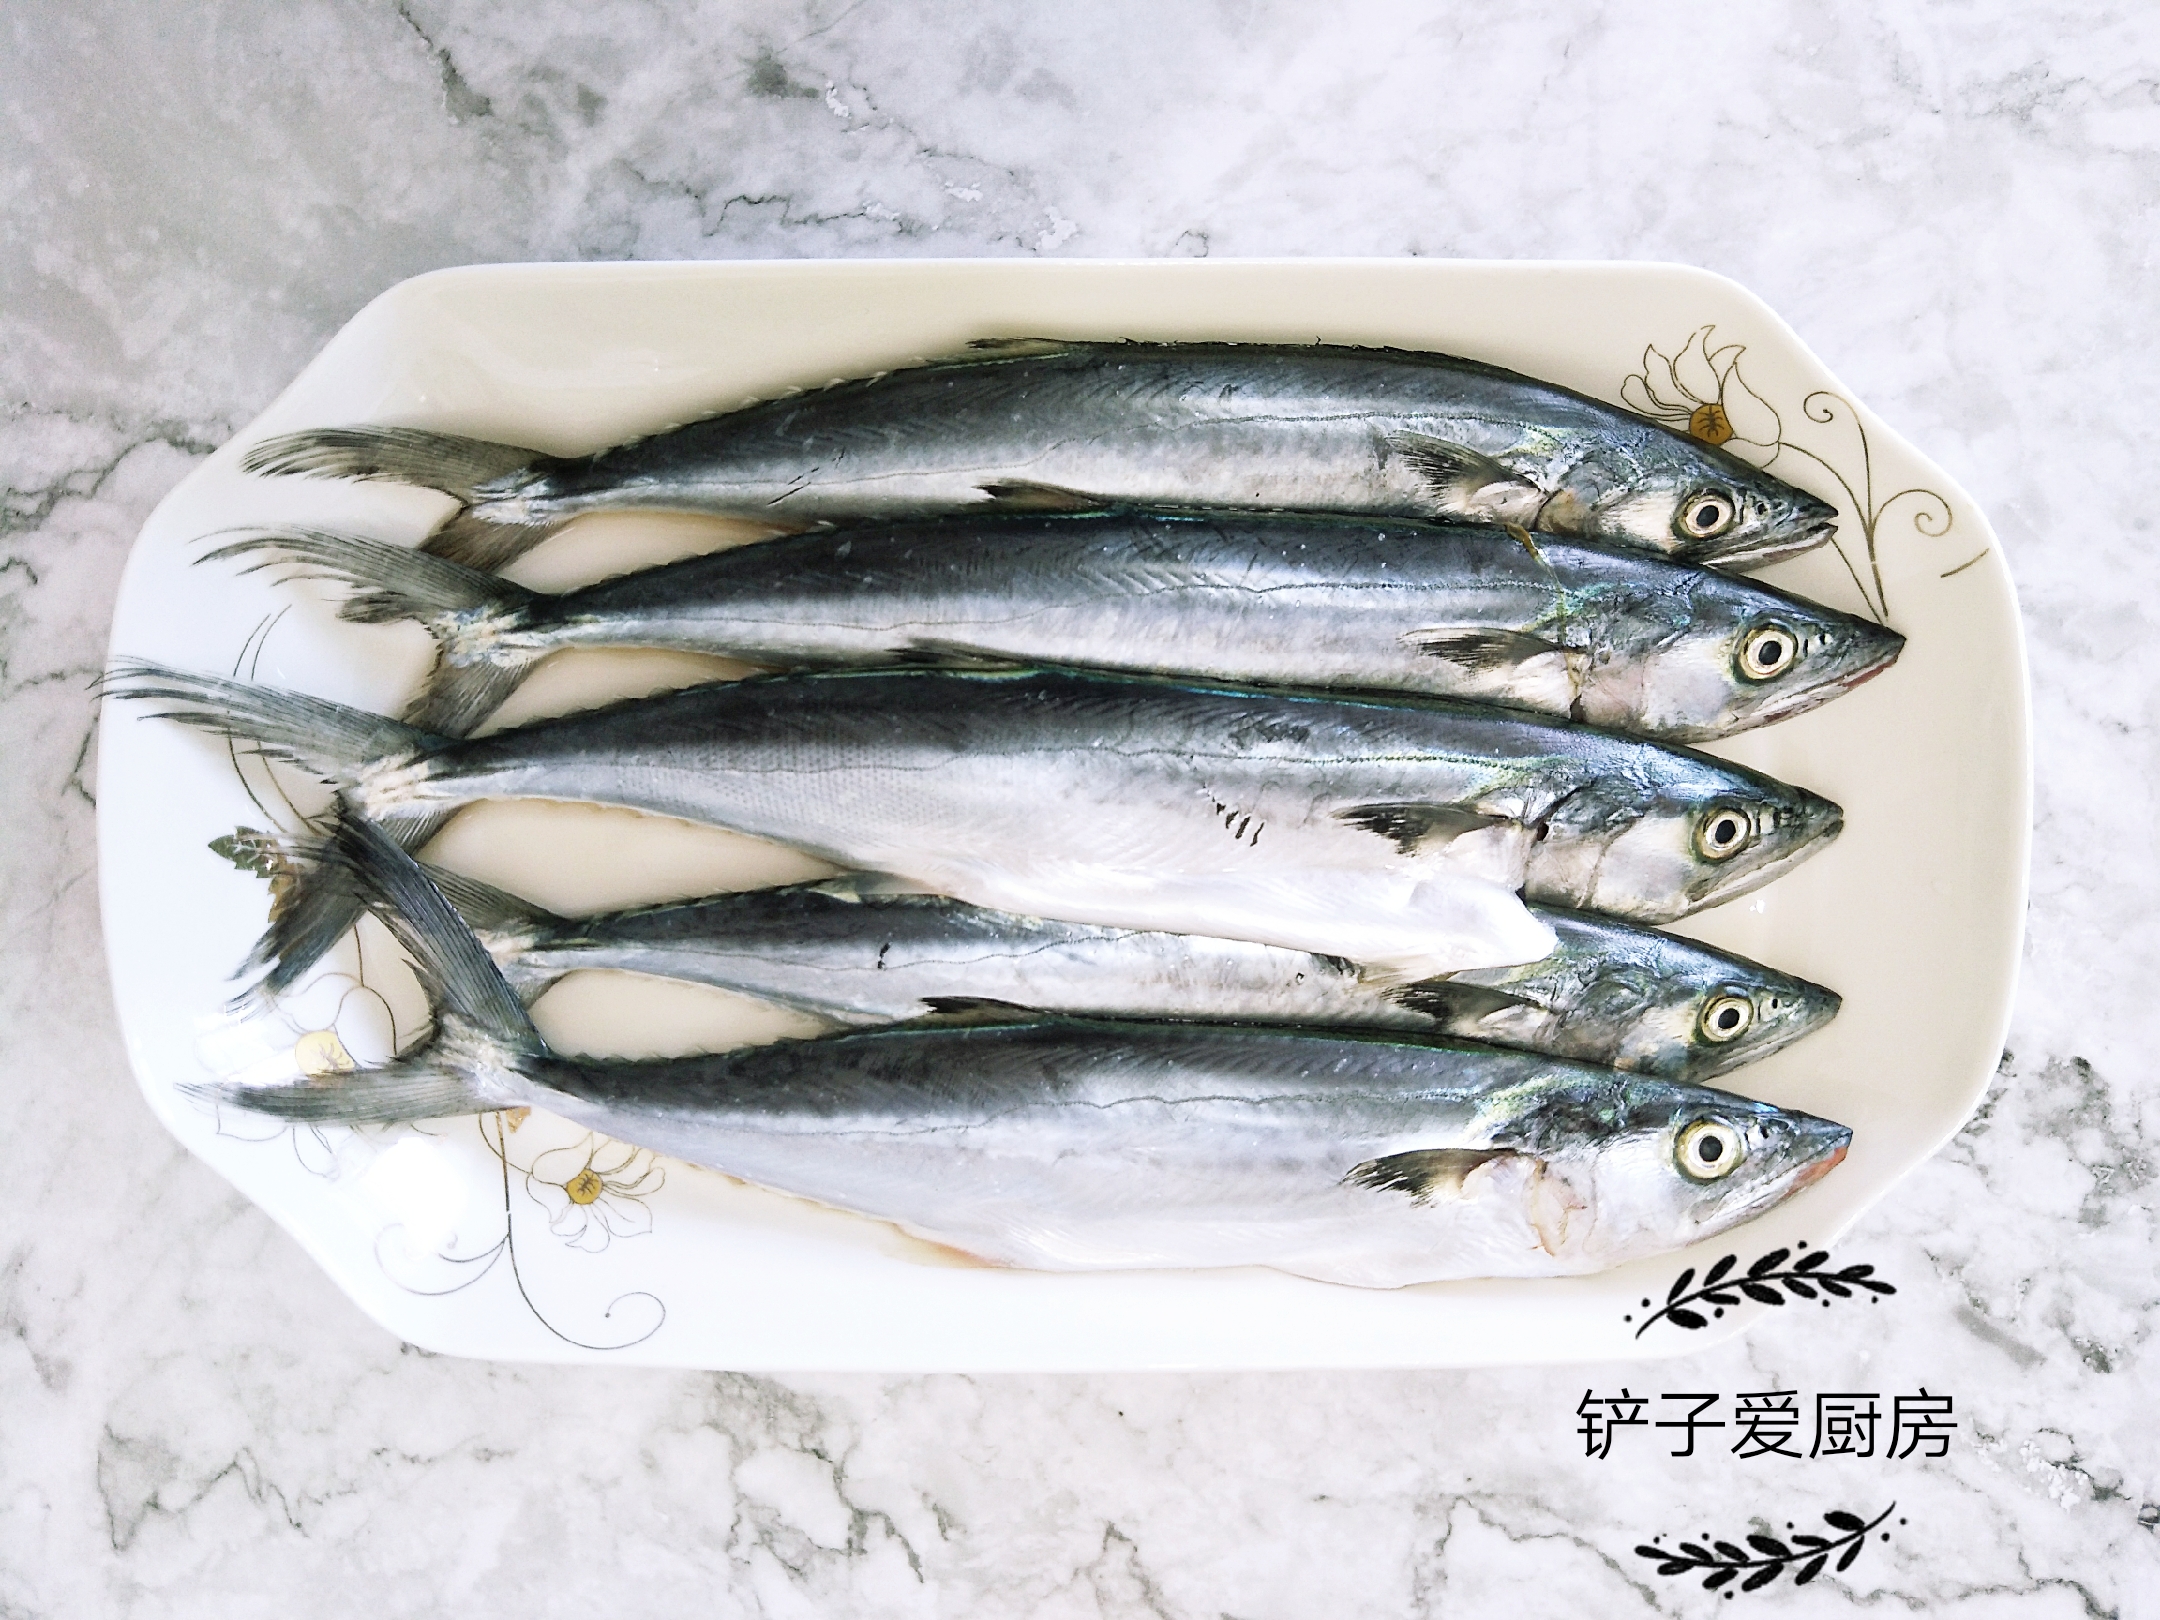 休渔期结束，秋鲅鱼上市，只要7元一斤，这样做肉质鲜美